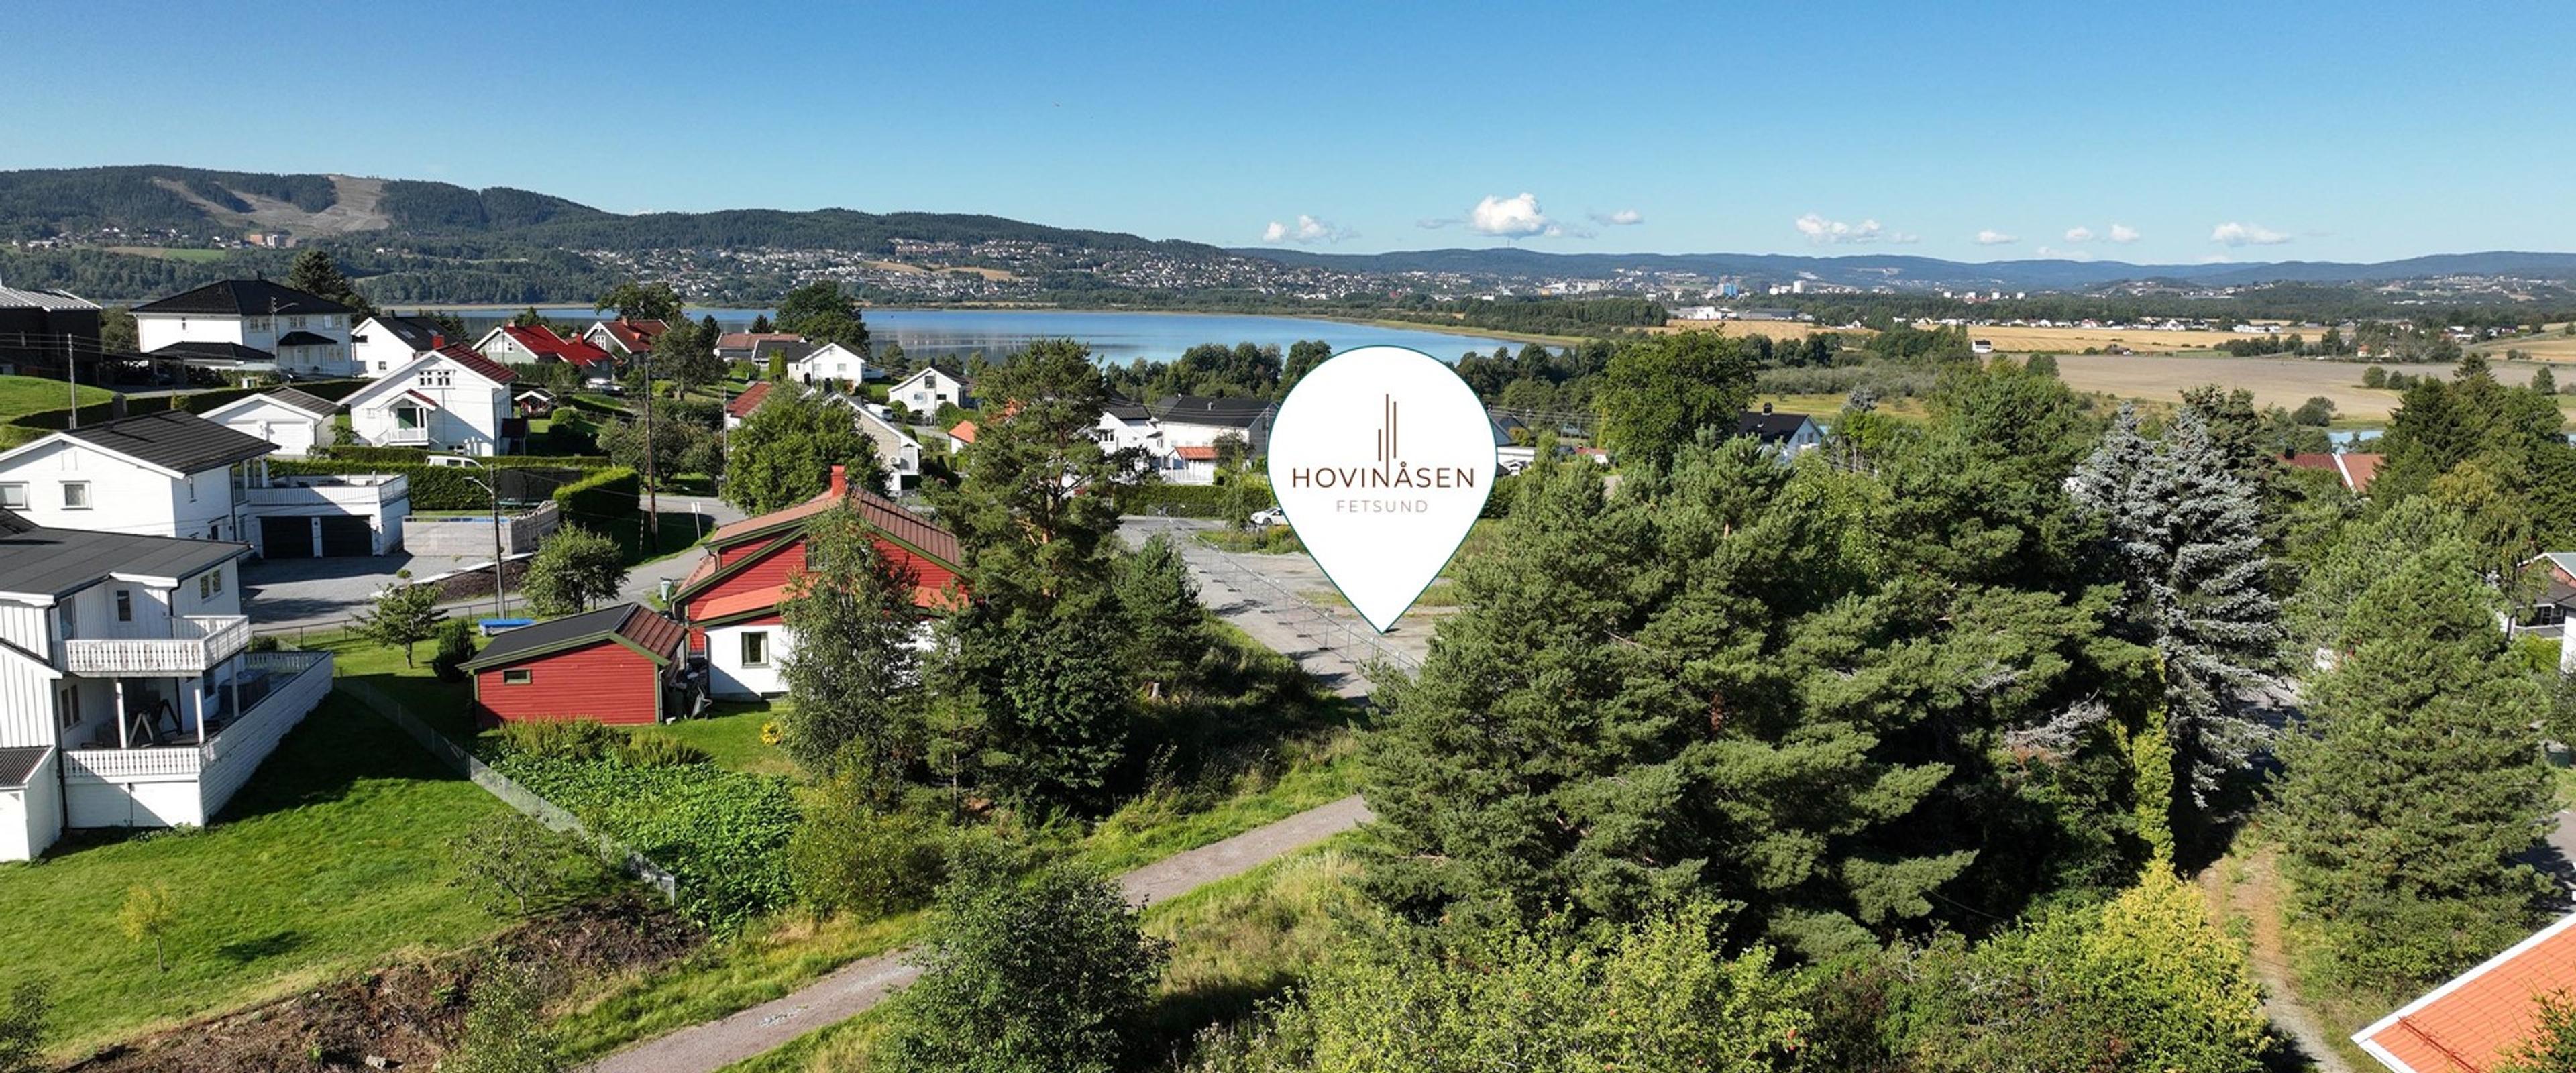 Hovinåsen - Nye rekkehus i et bilfritt boligområde under prosjektering, Fetsund/Lillestrøm